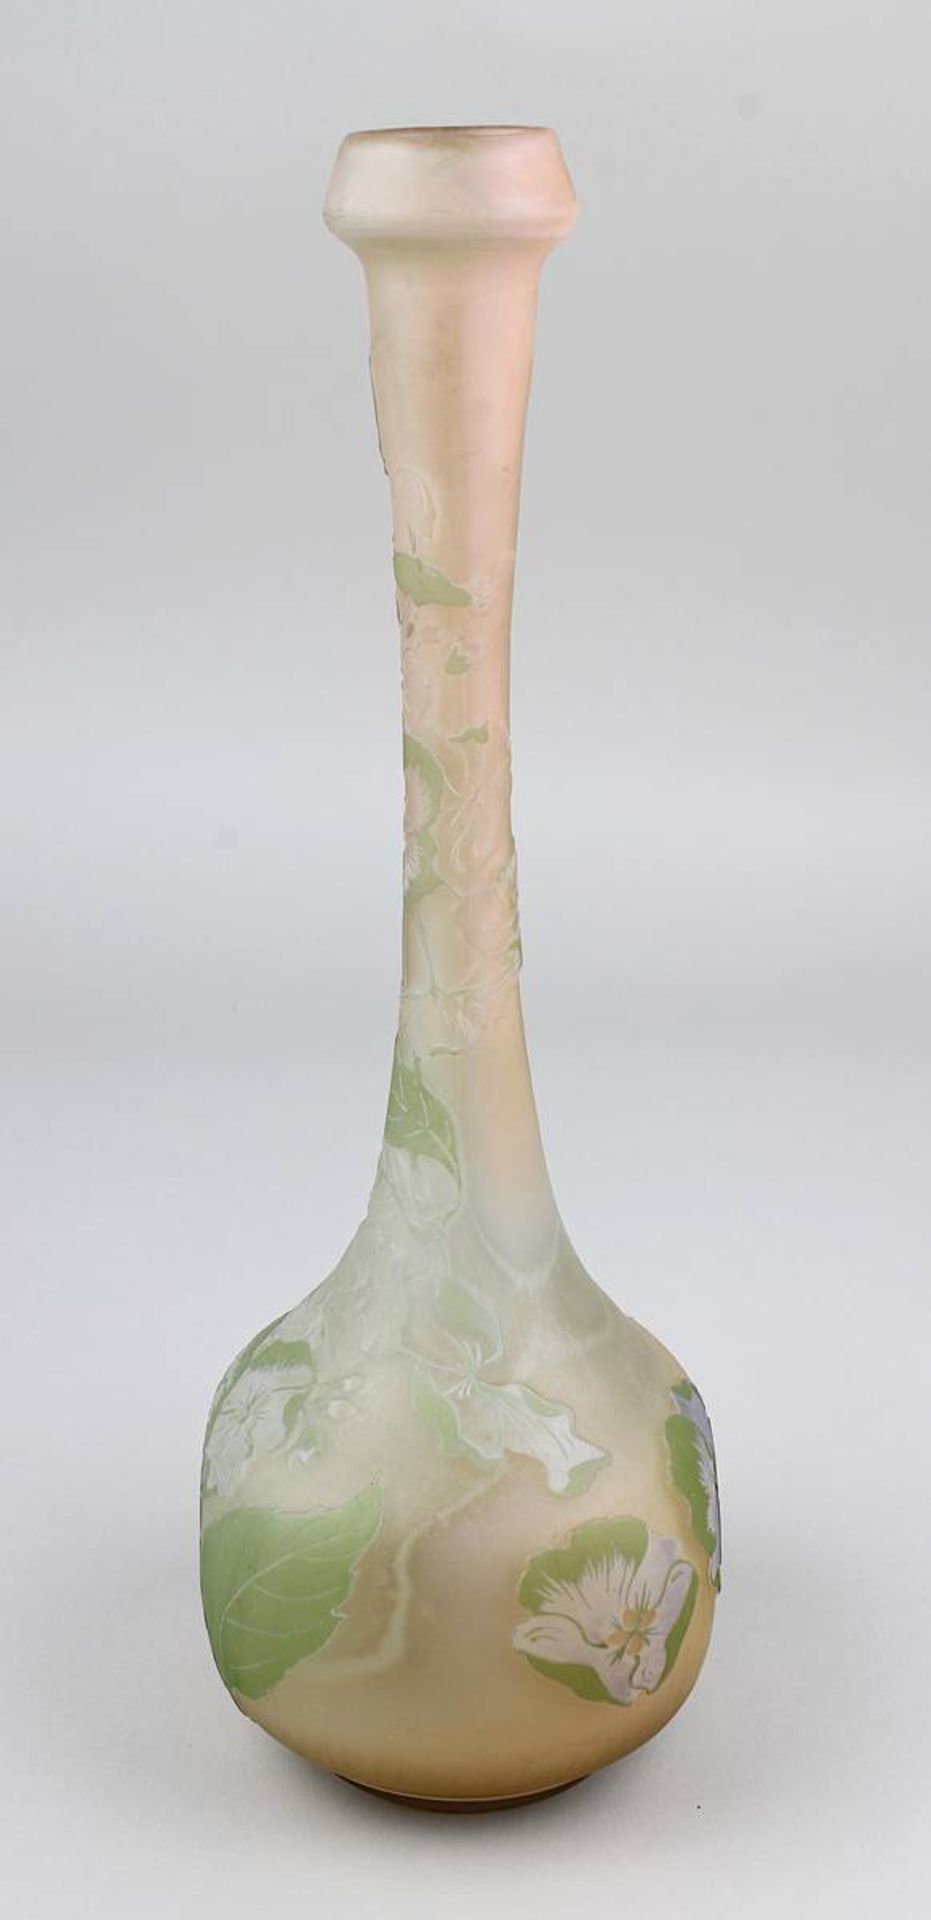 Gallé Jugendstil-Vase mit Hortensiendekor, Nancy 1904-06, vierpassiger Vasenbau mit langgezogenem - Image 3 of 5